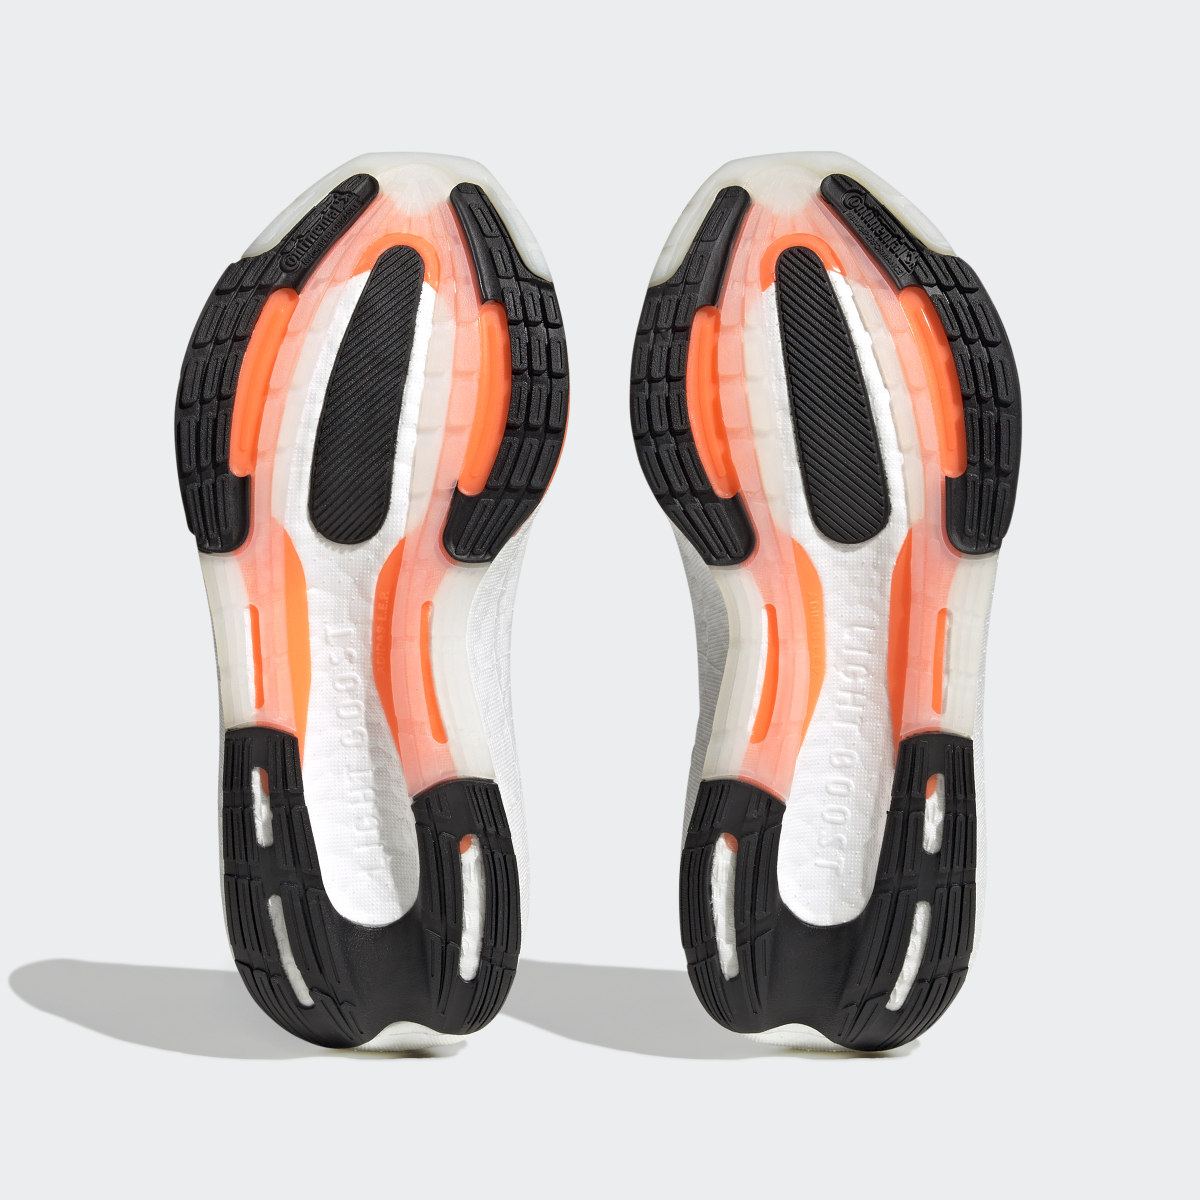 Adidas Ultraboost Light Running Shoes. 4